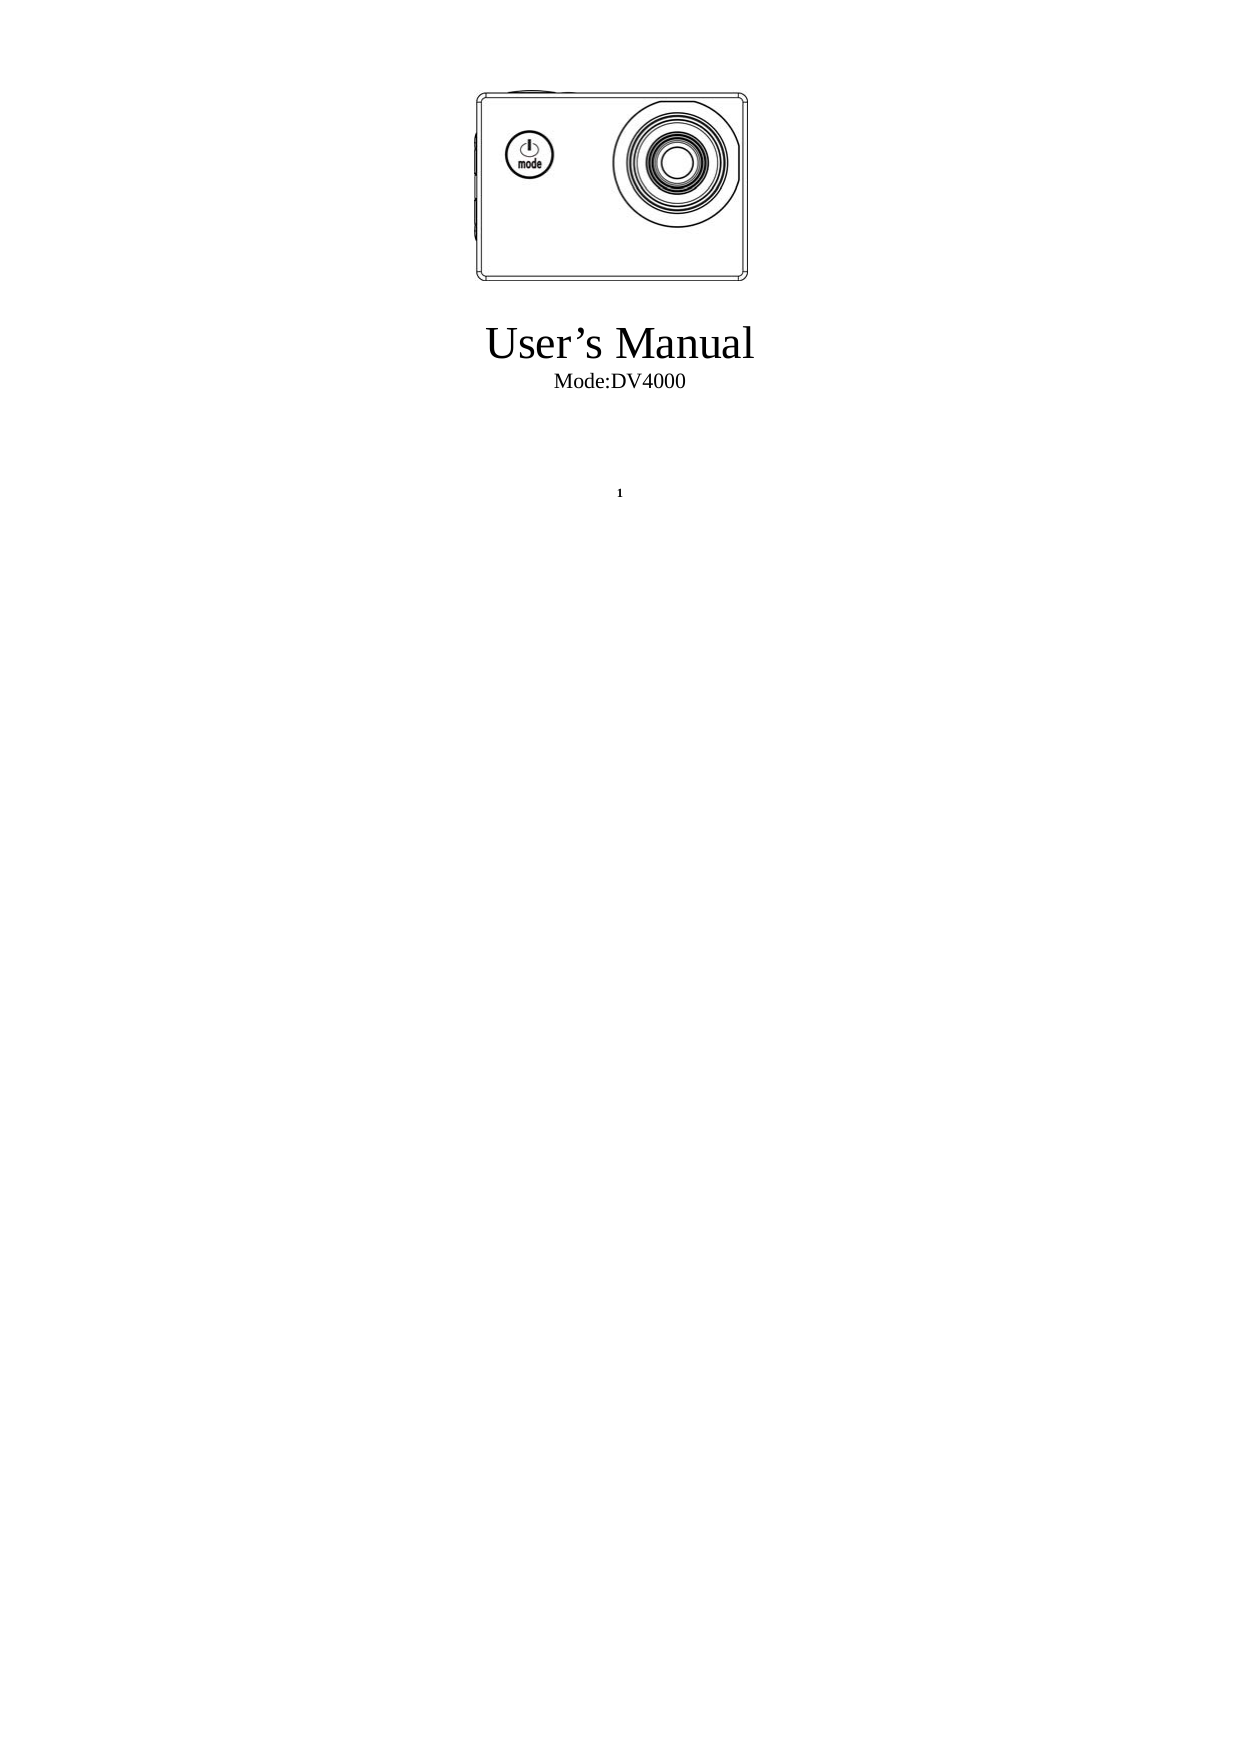 1User’s ManualMode:DV4000